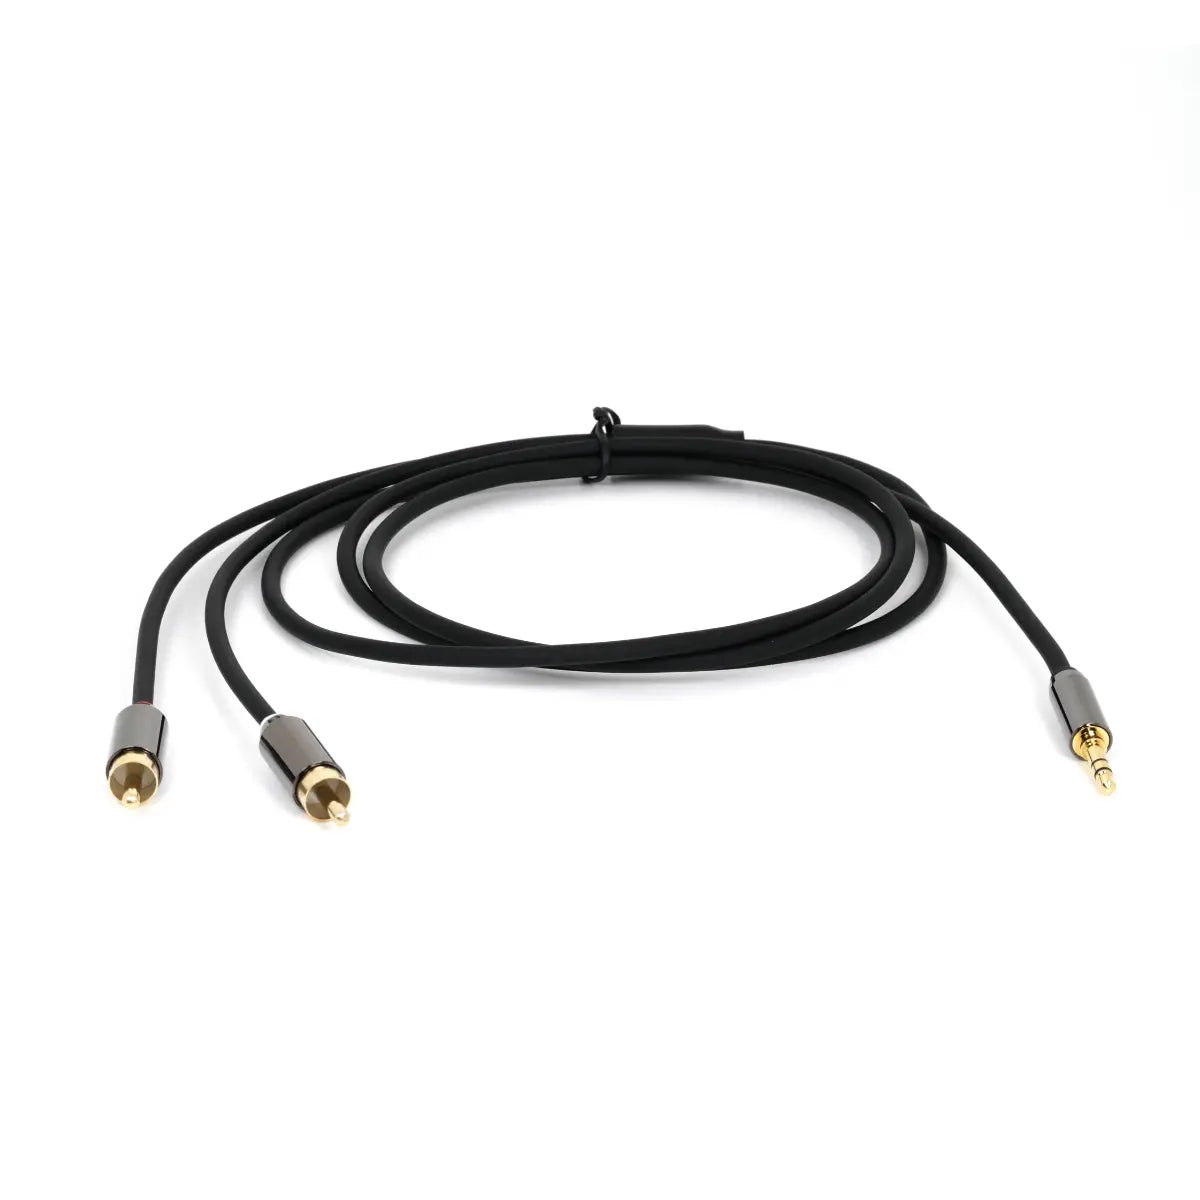 Cable jack audio RCA pour relier votre mobile à votre système Hi-Fi XA295